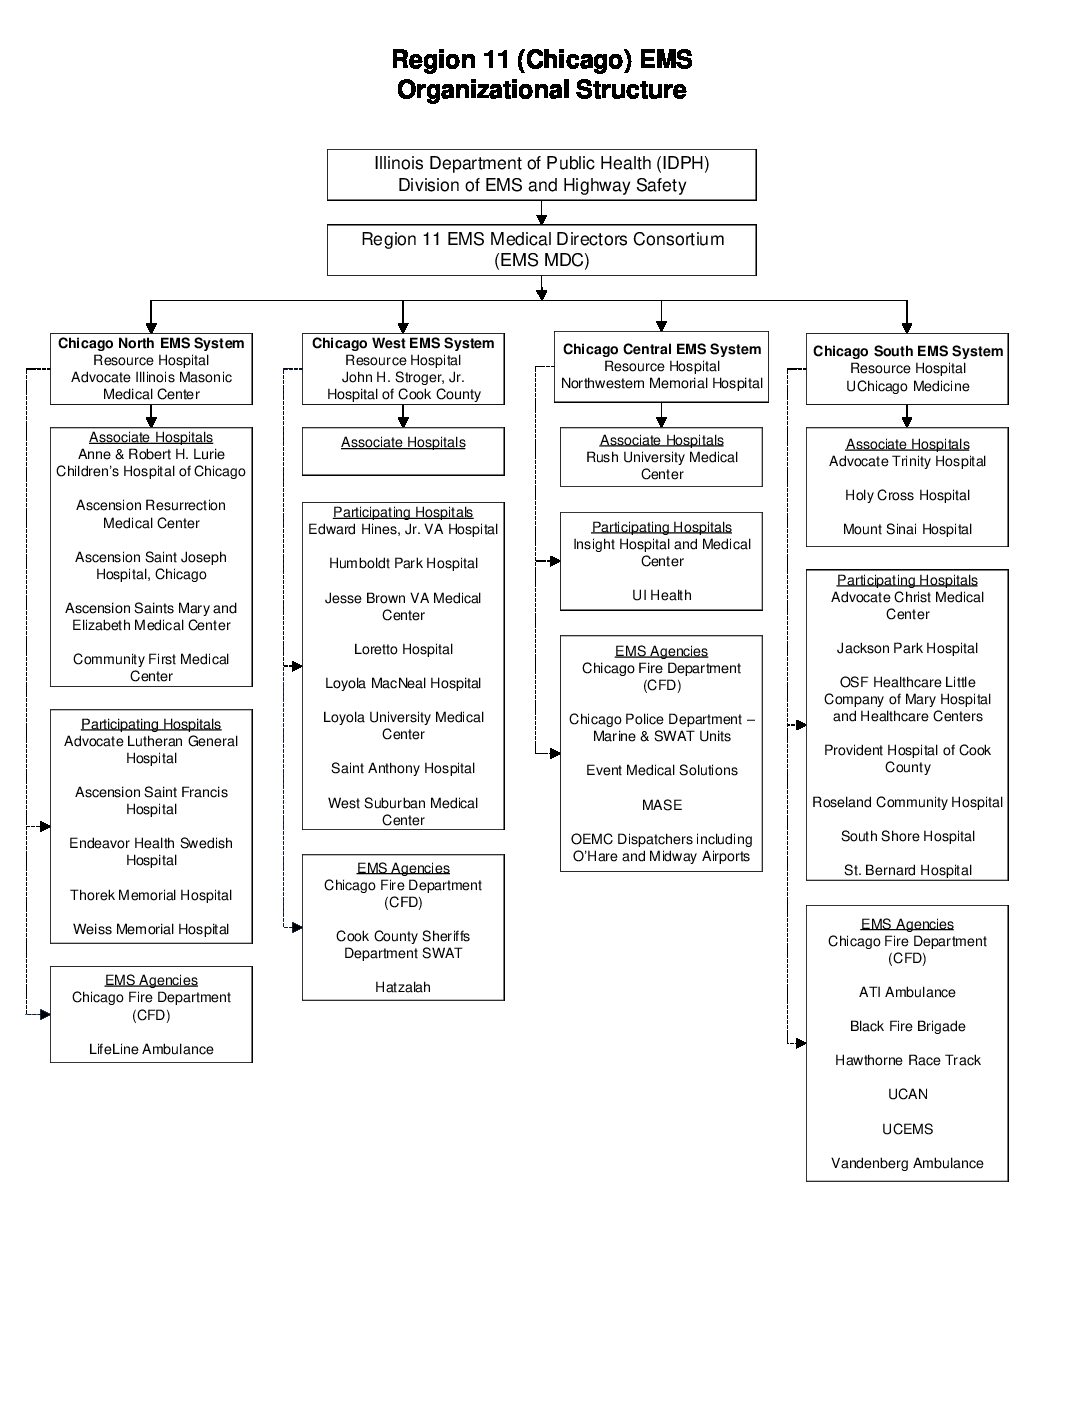 Region 11 (Chicago) EMS Organizational Structure